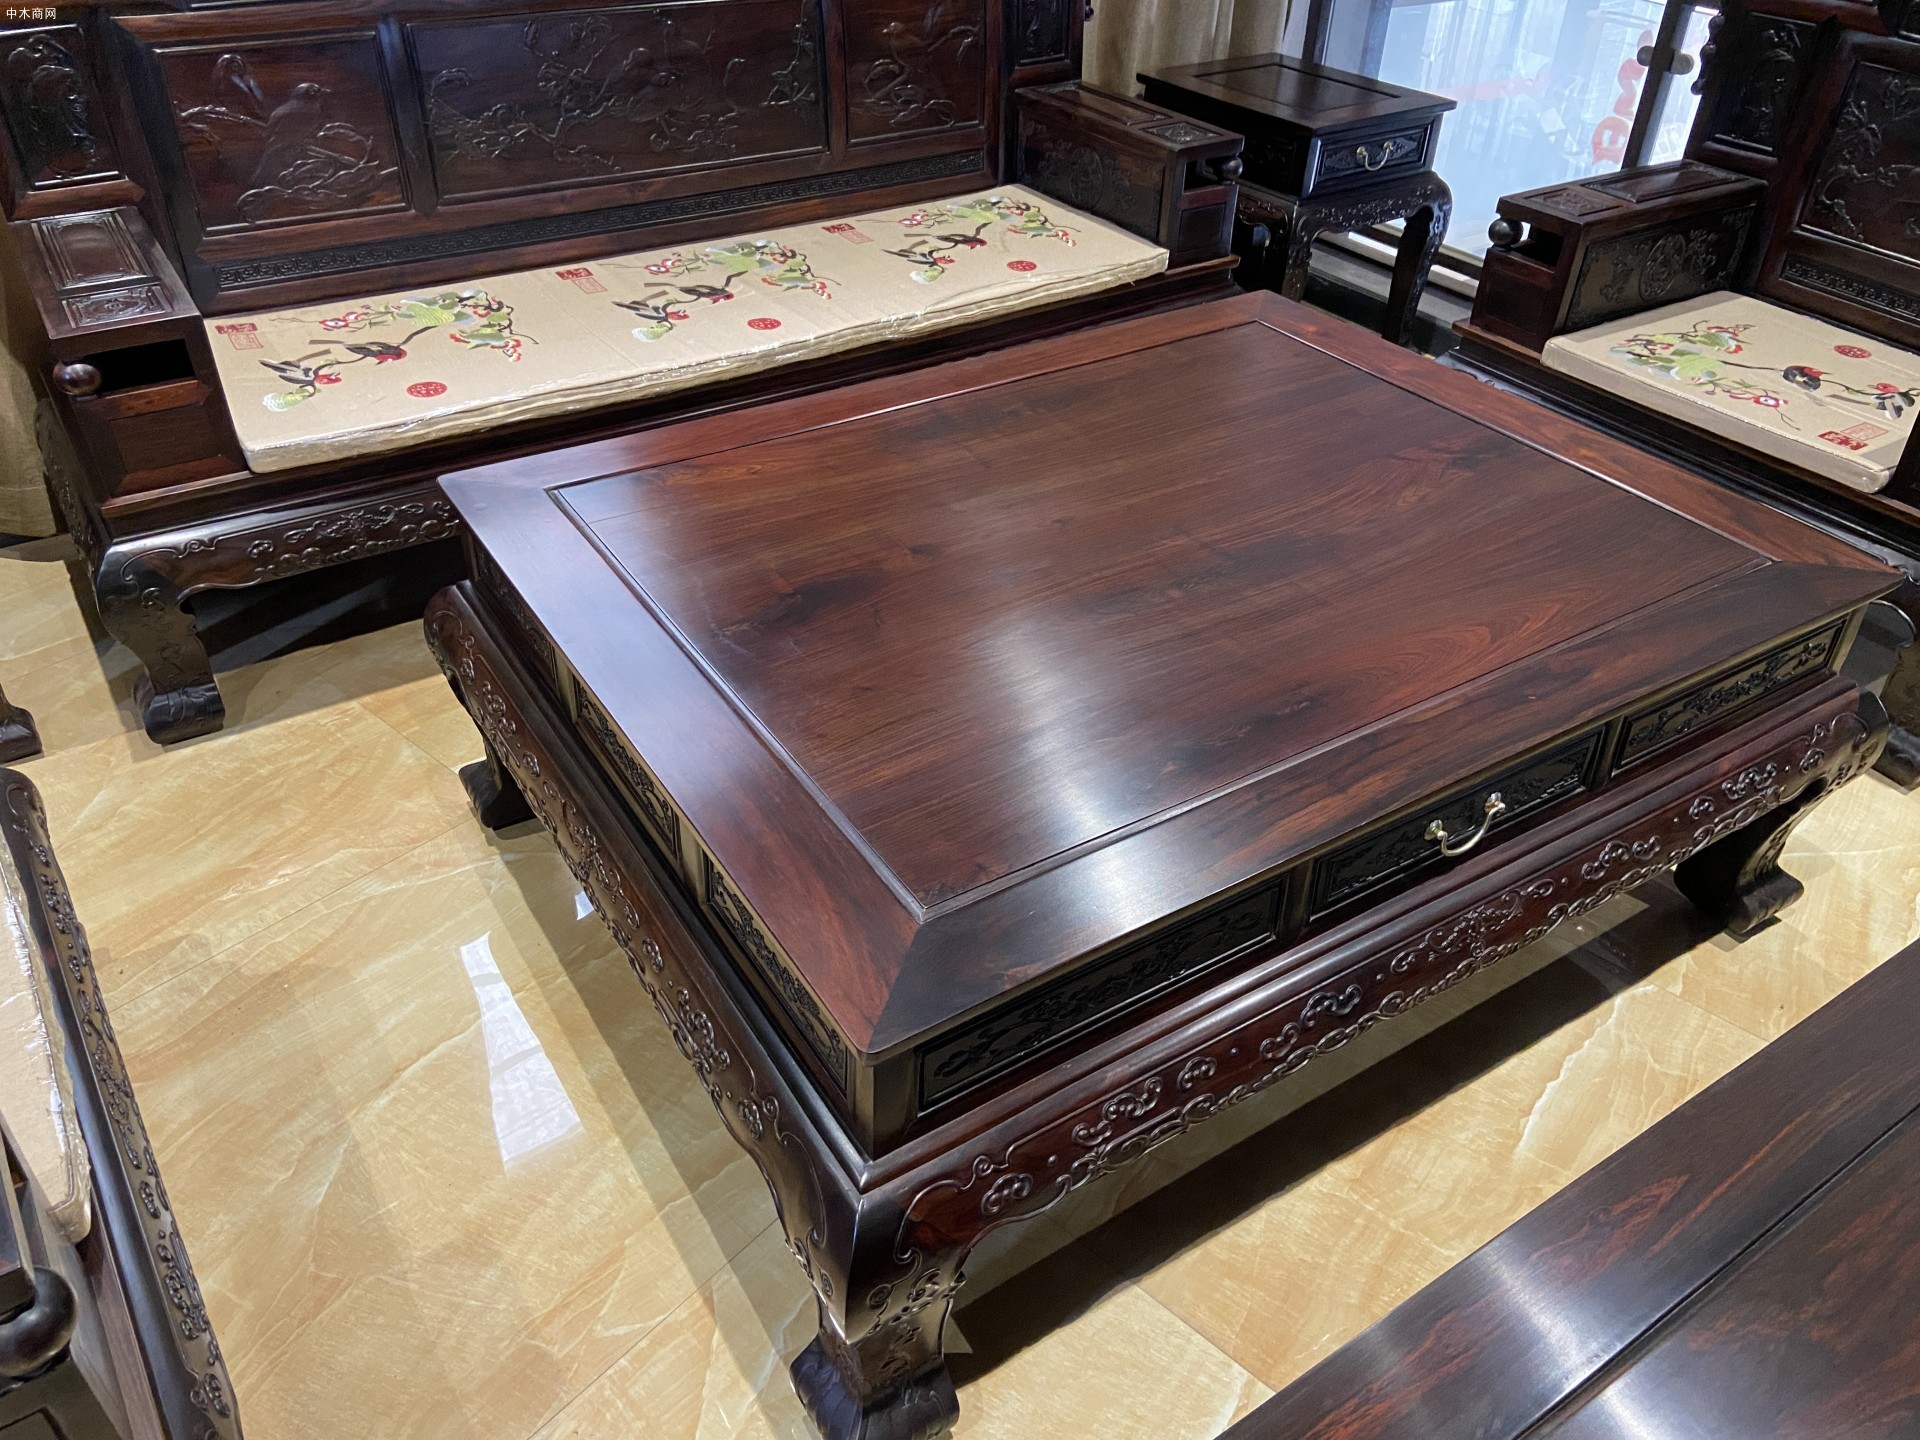 老挝大红酸枝红木家具客厅沙发组合七件套价格品牌